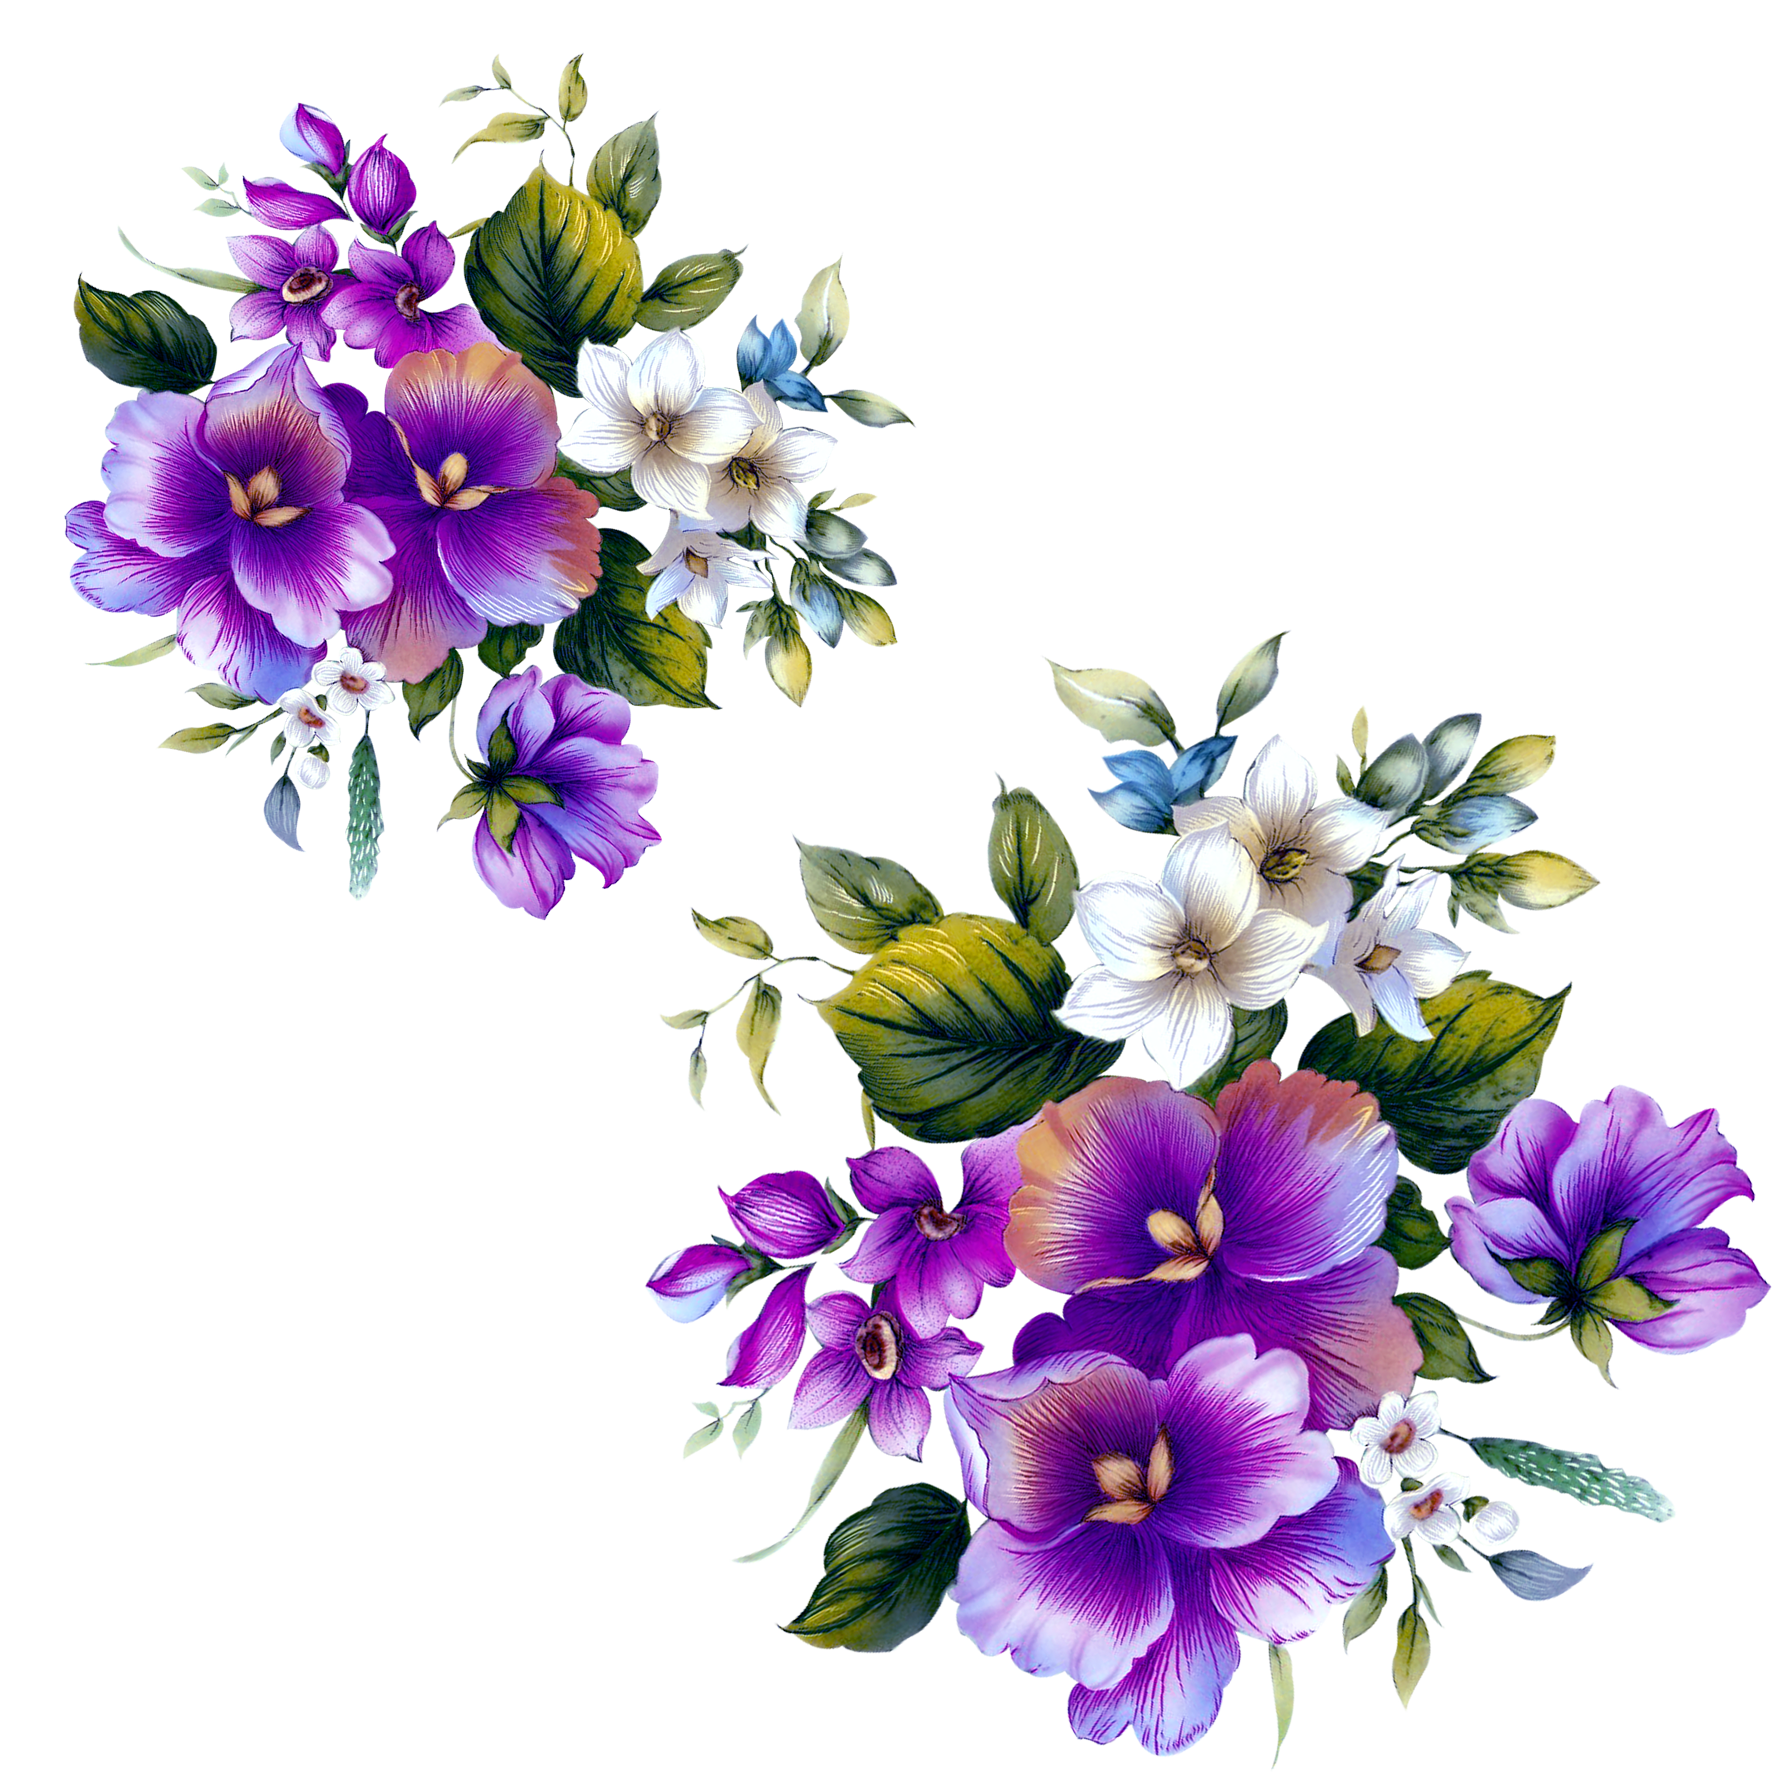 Floral design Flower Purple - Purple flowers decorative floral patterns ...